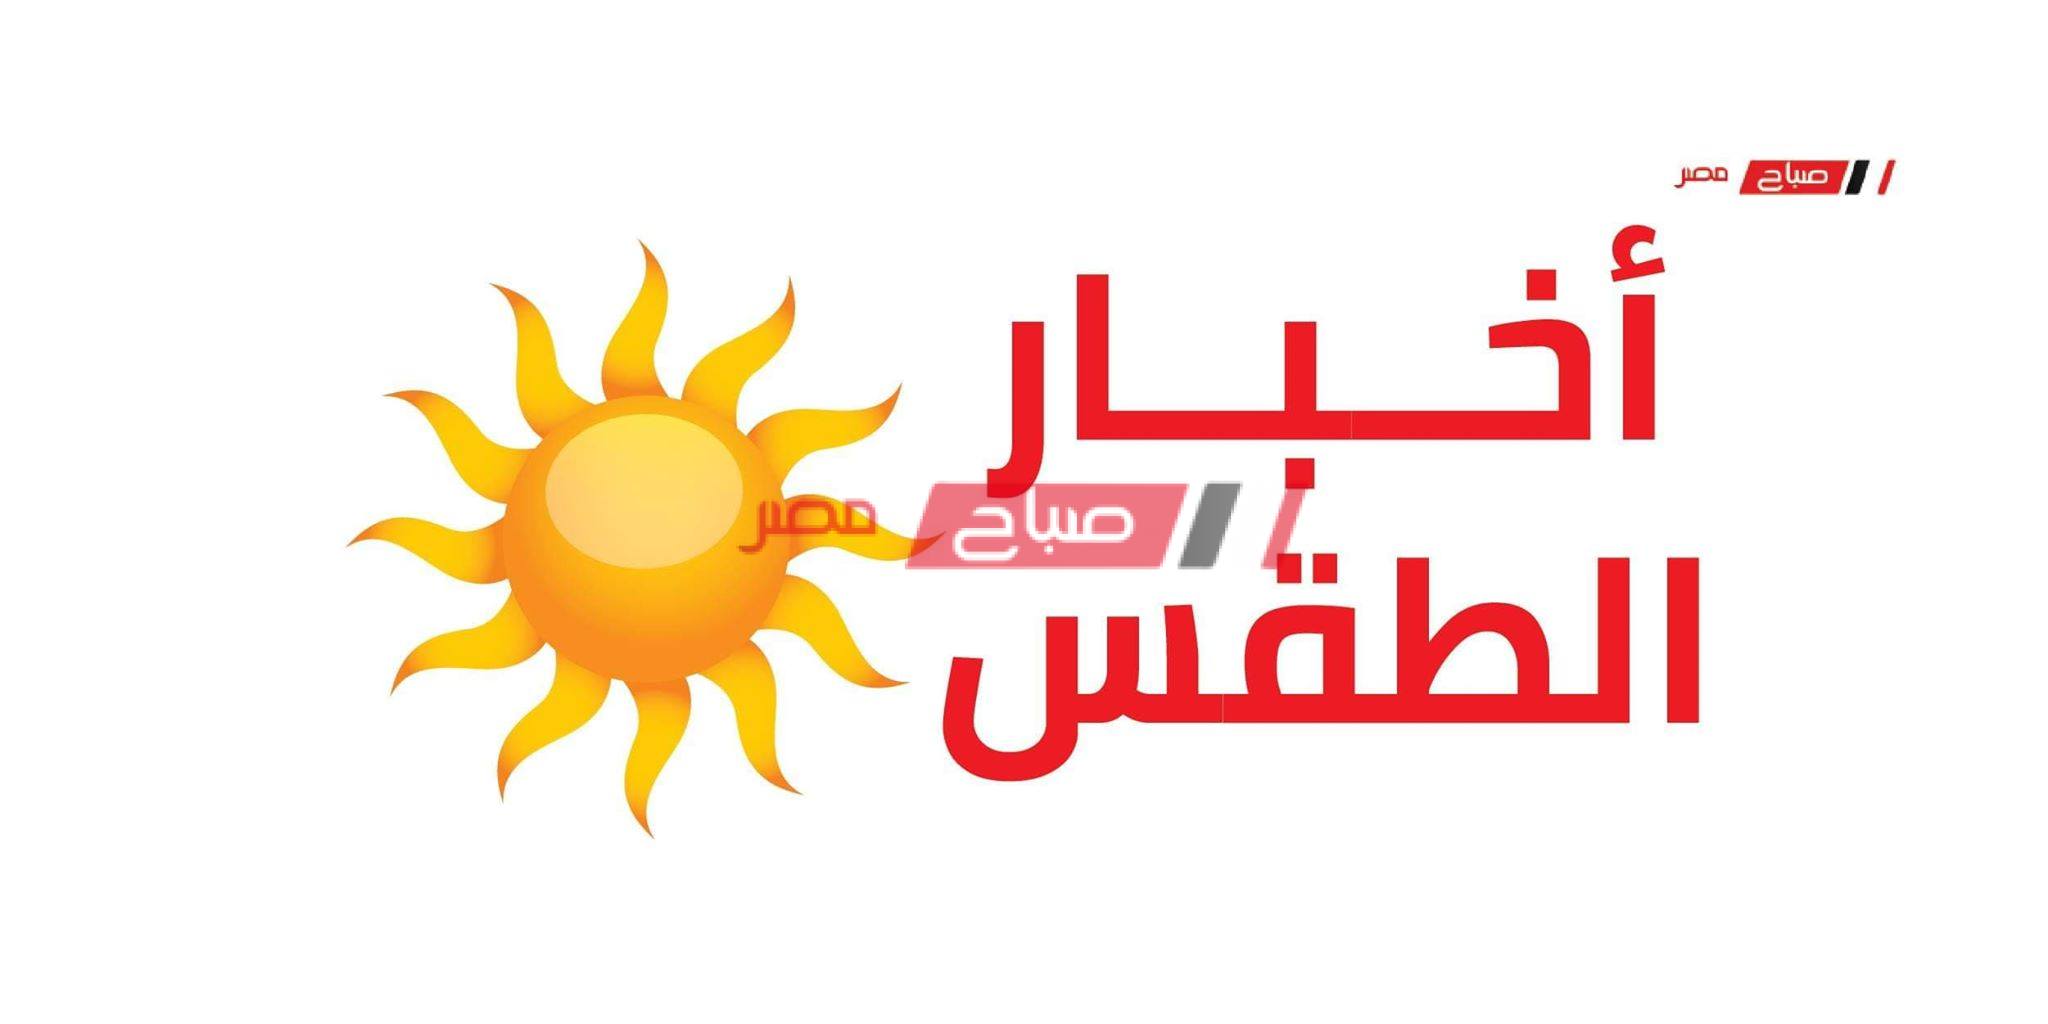 الطقس اليوم الأحد 17-5-2020 في مصر - موقع صباح مصر